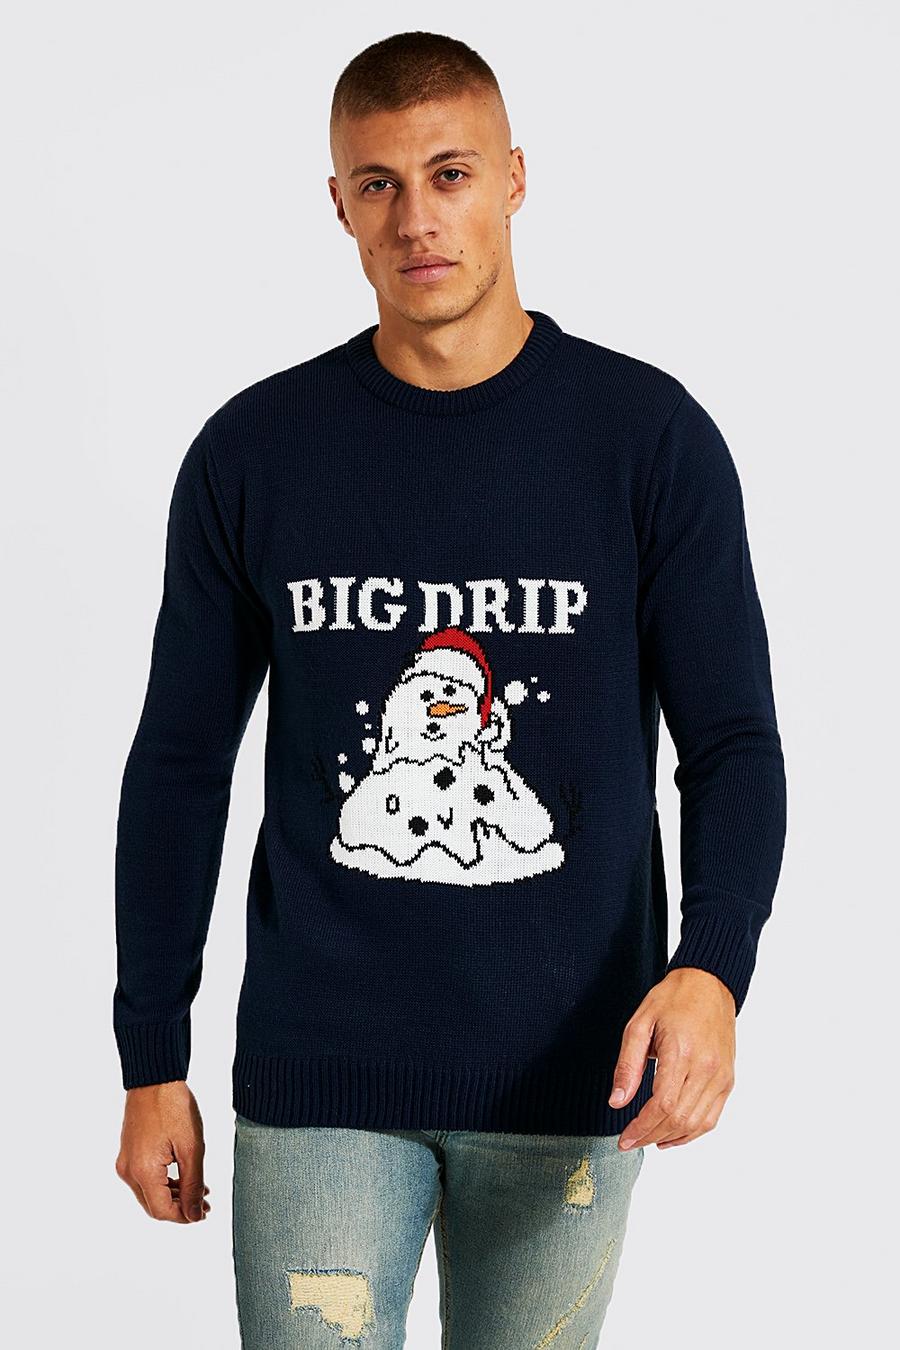 Maglione natalizio con pupazzo di neve e scritta Big Drip, Navy azul marino